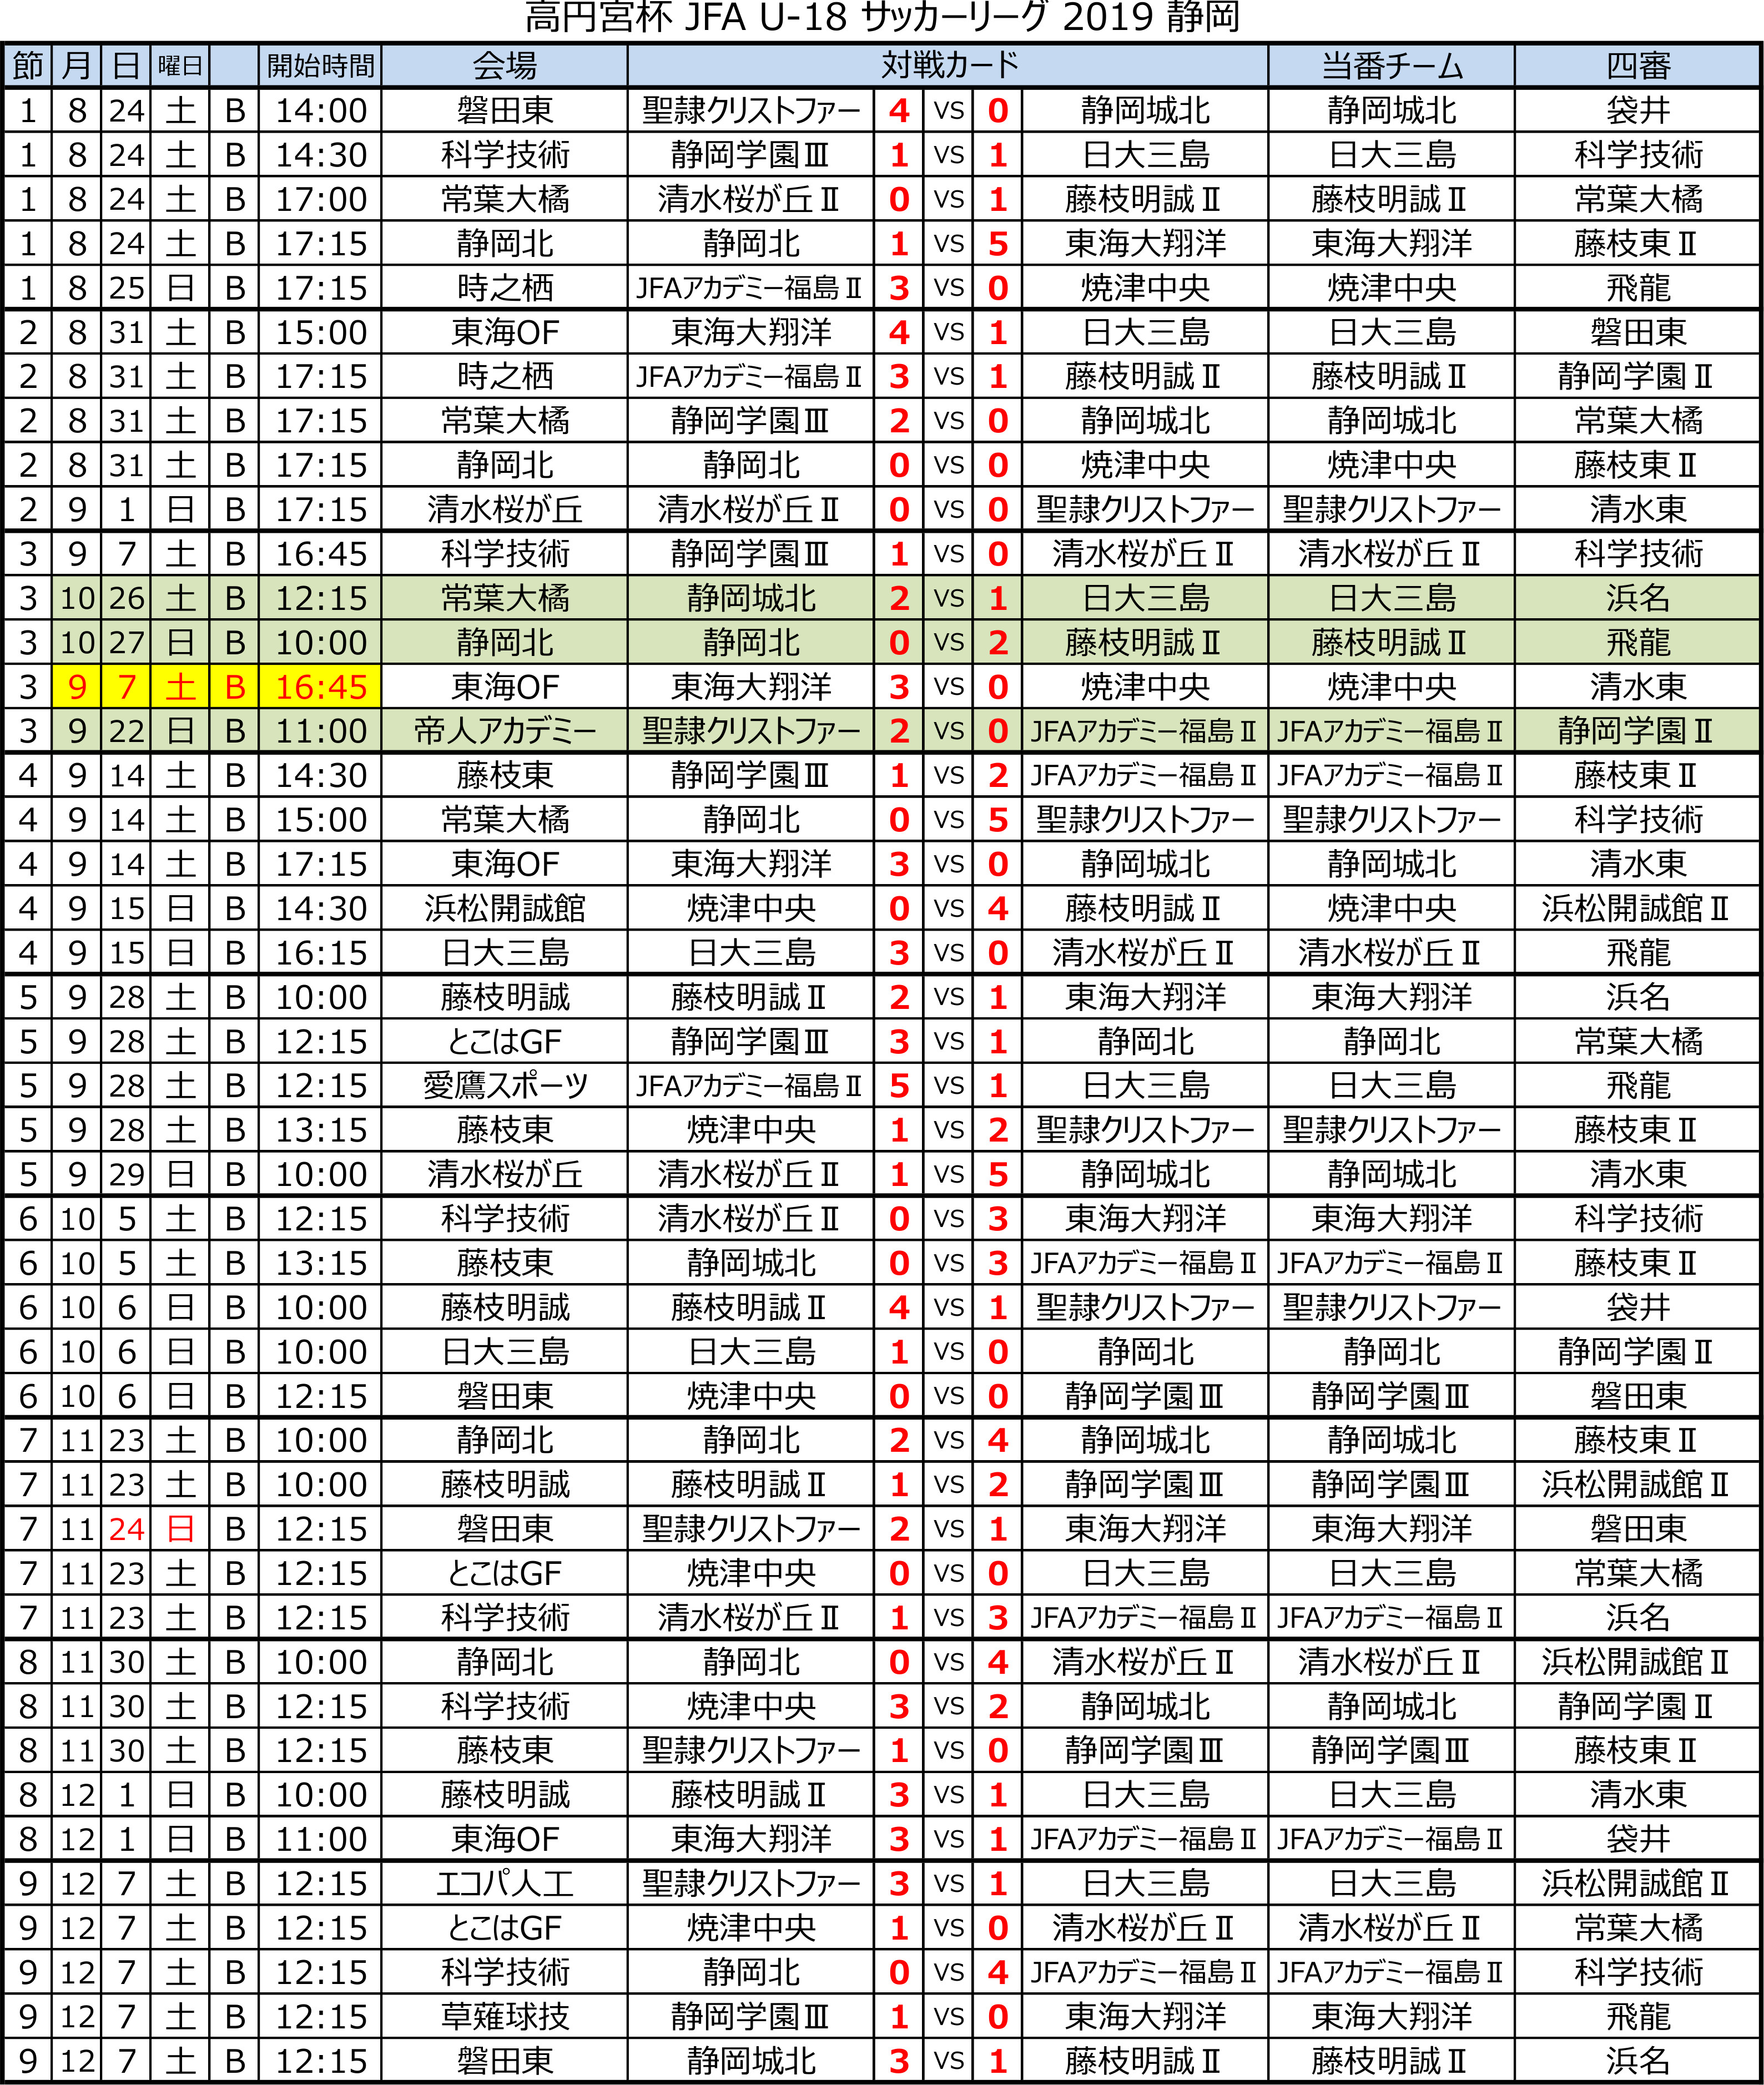 高円宮杯 JFA U-18サッカーリーグ2019 静岡 　Bリーグ後期 トーナメント表